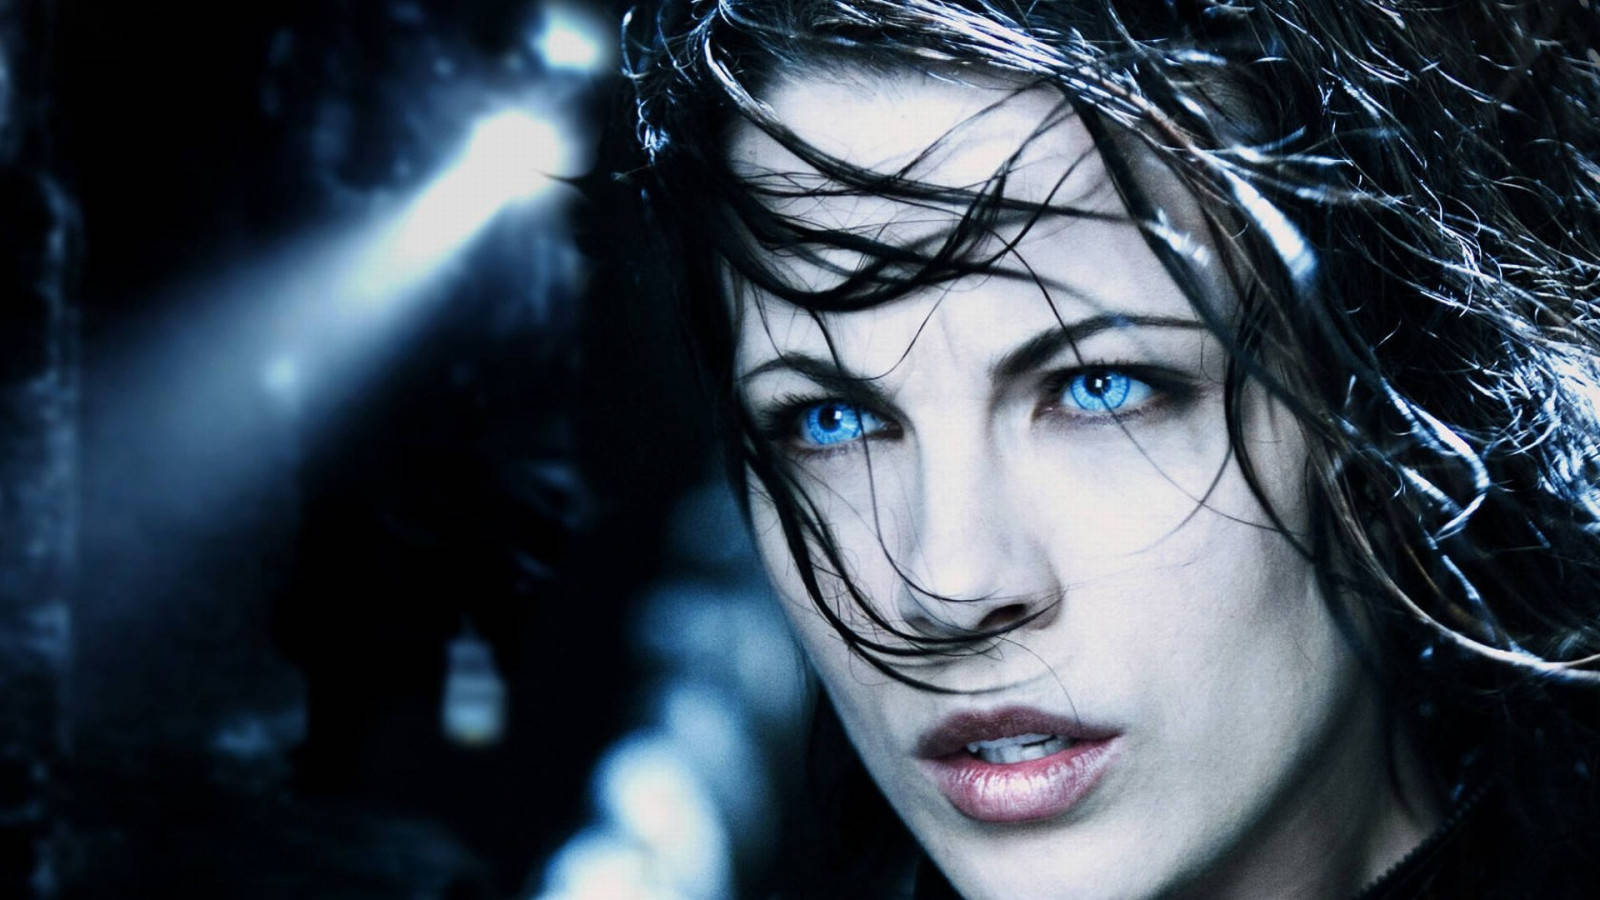 Kate Beckinsale as Selene in Underworld Wallpaper